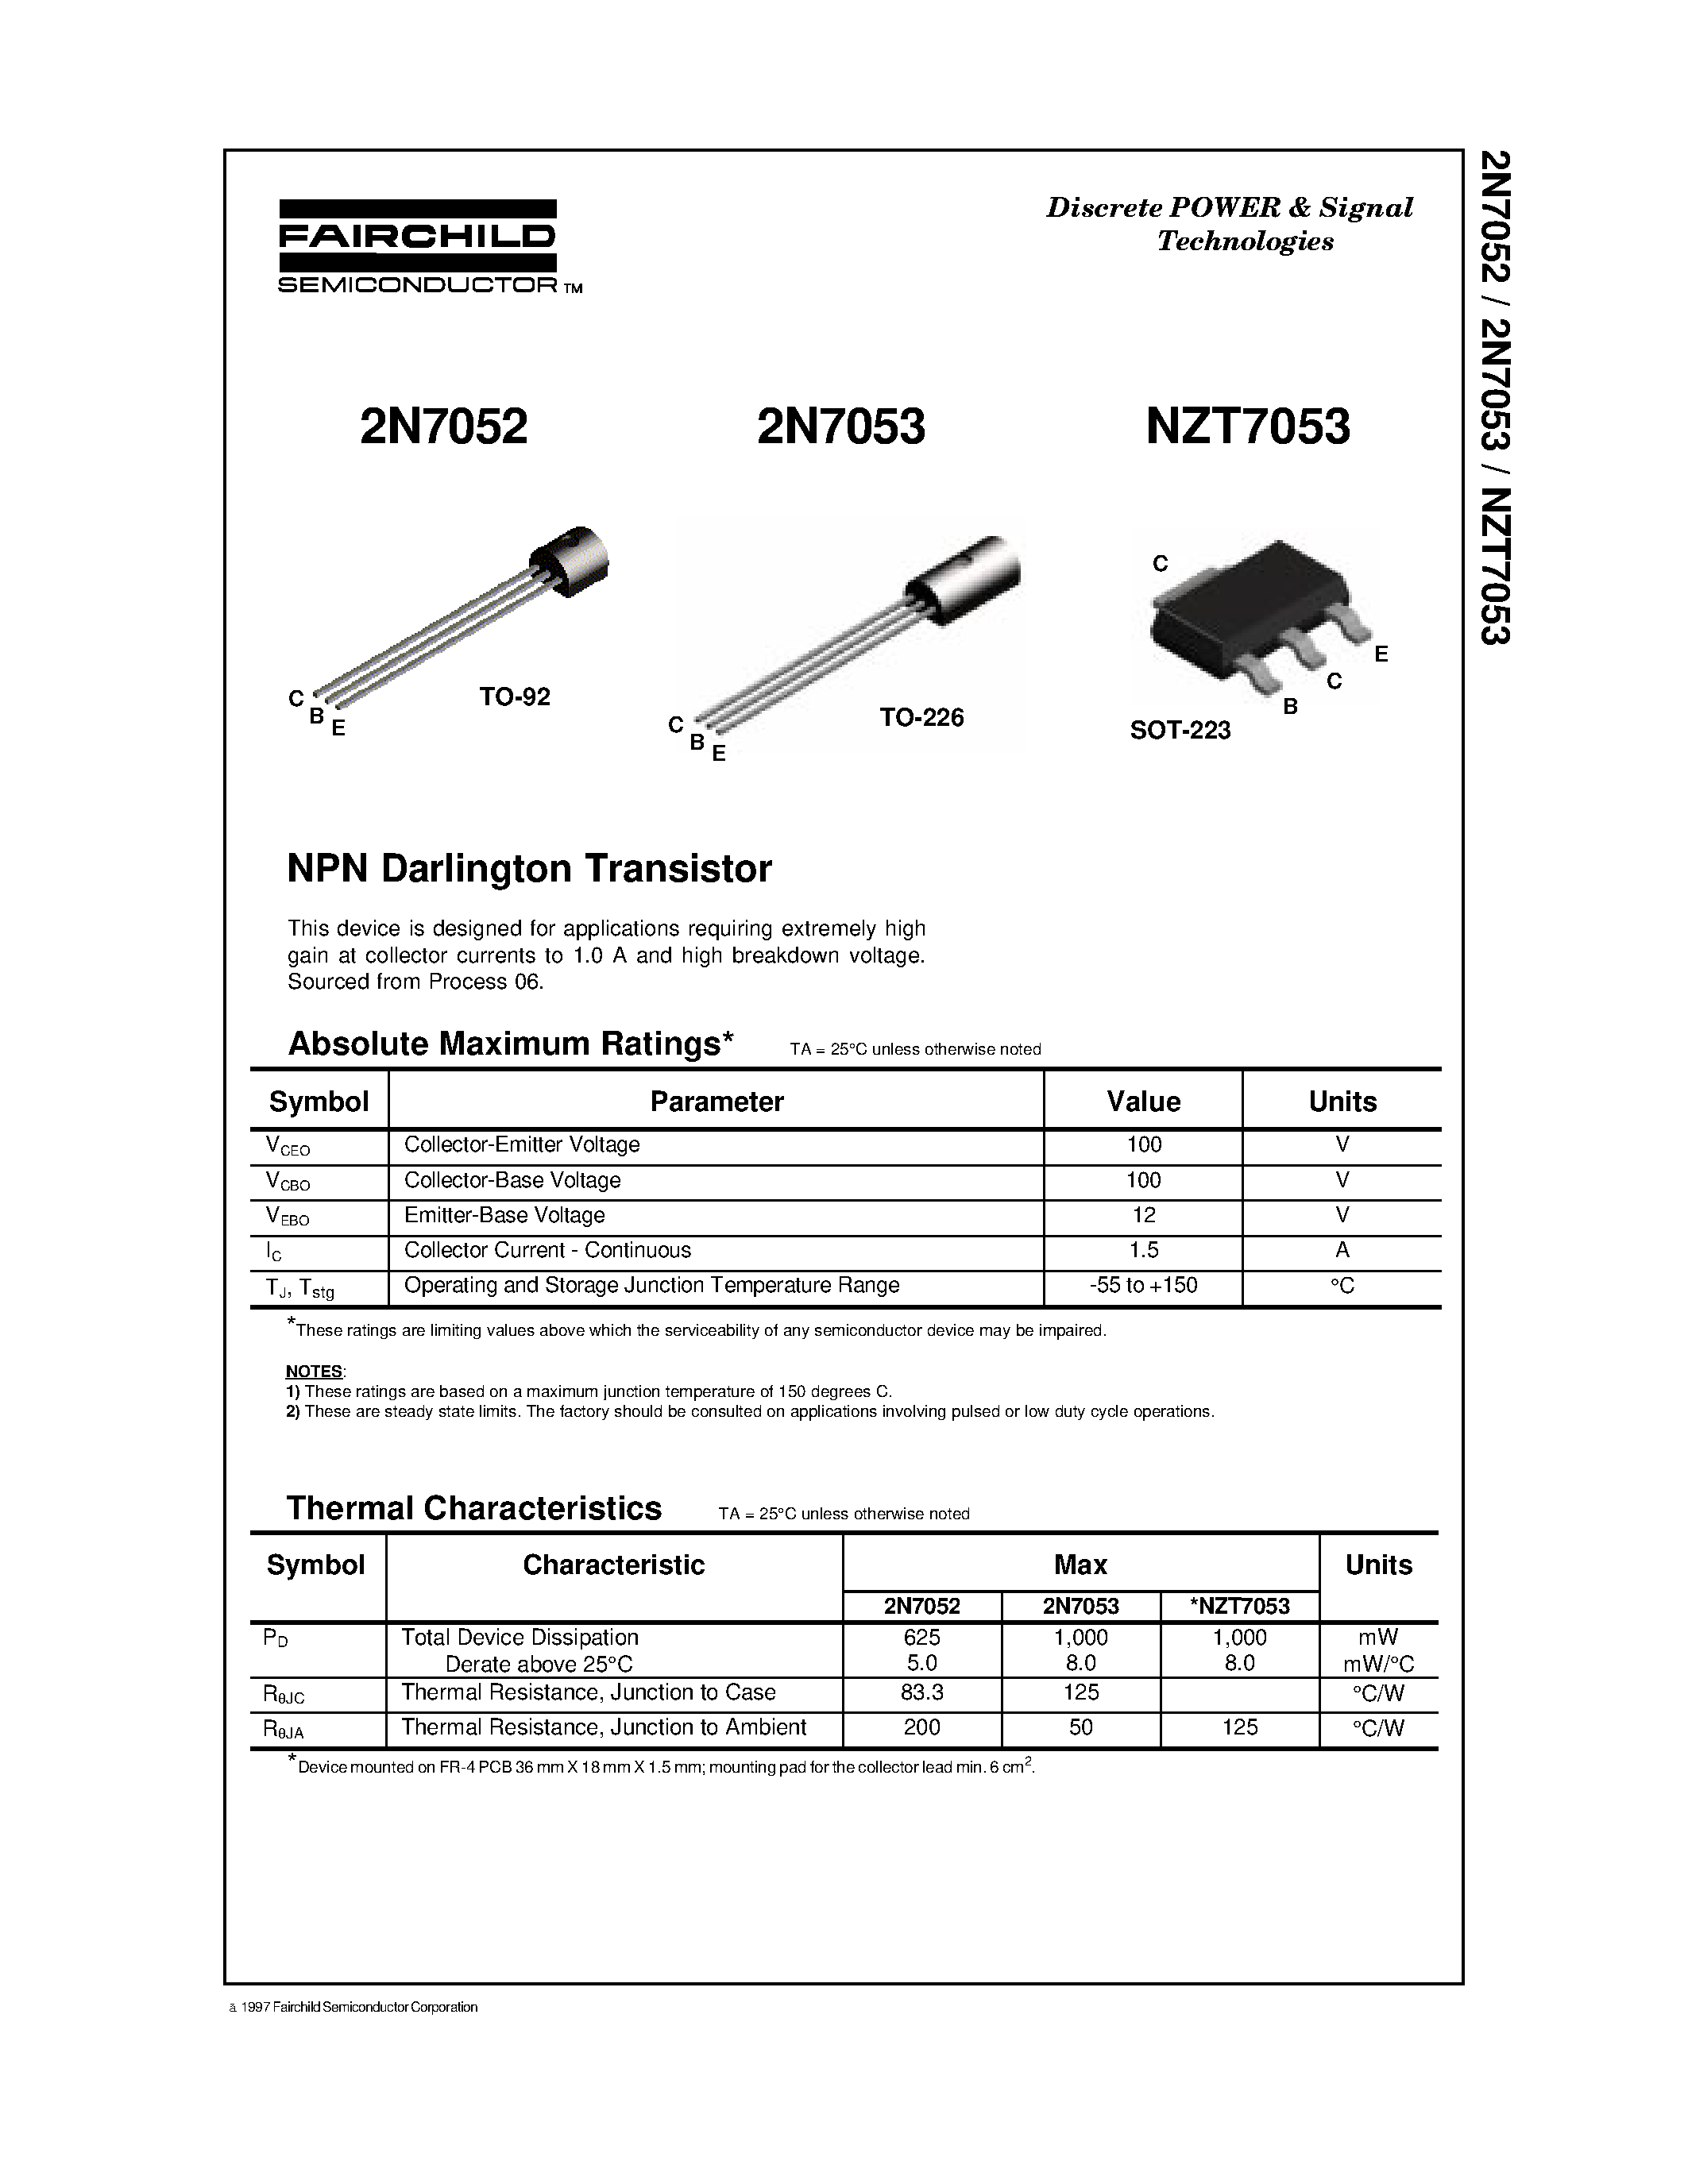 Даташит NZT7053 - NPN Darlington Transistor страница 1